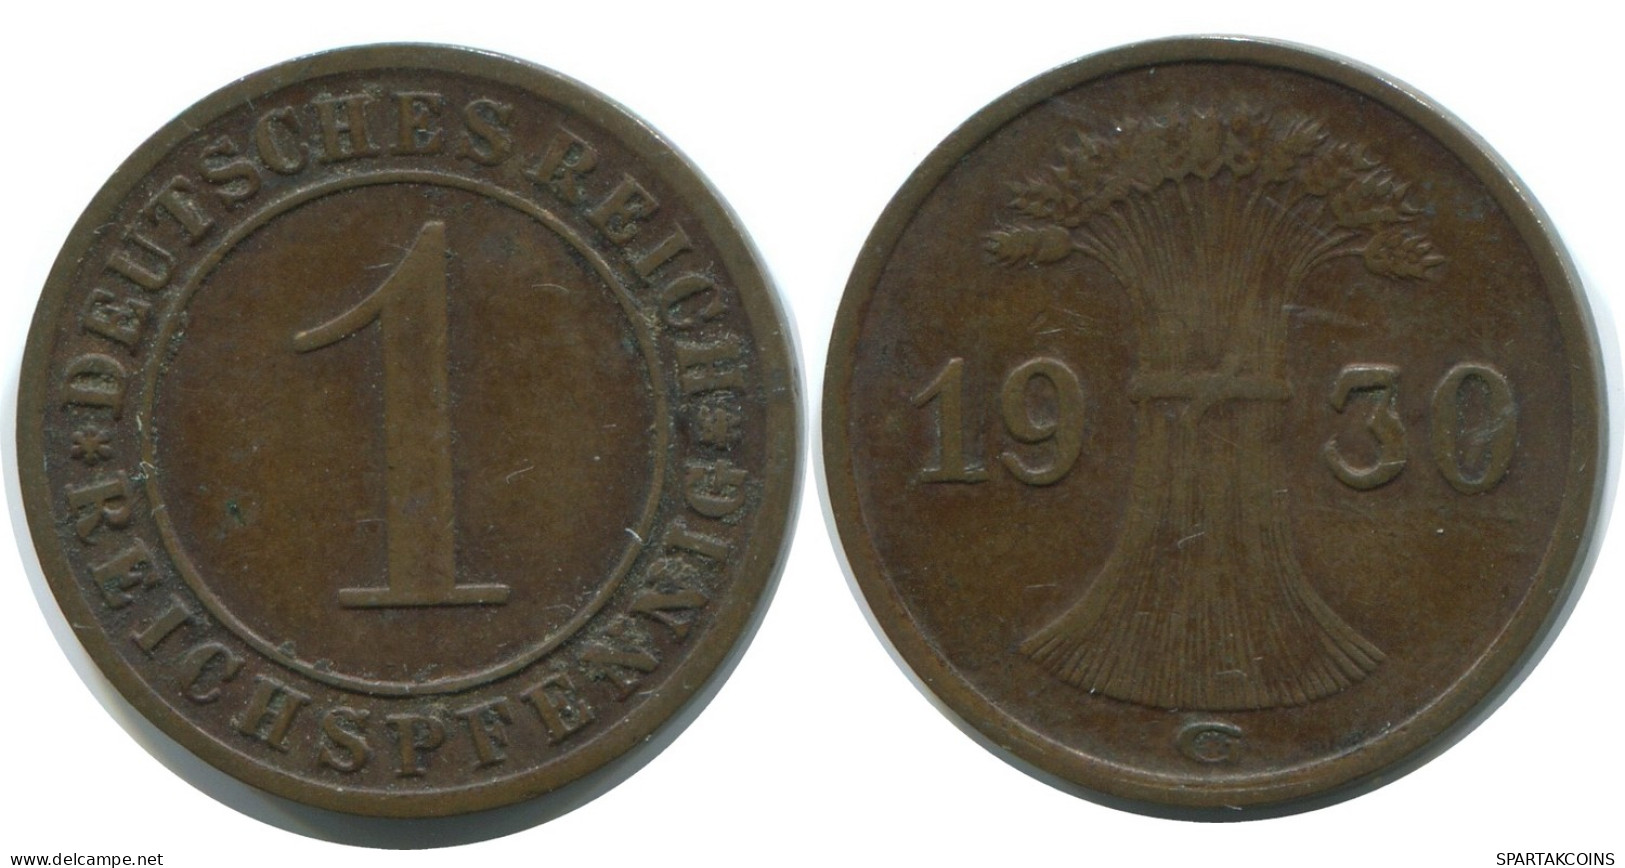 1 REICHSPFENNIG 1930 G ALEMANIA Moneda GERMANY #AE210.E - 1 Rentenpfennig & 1 Reichspfennig